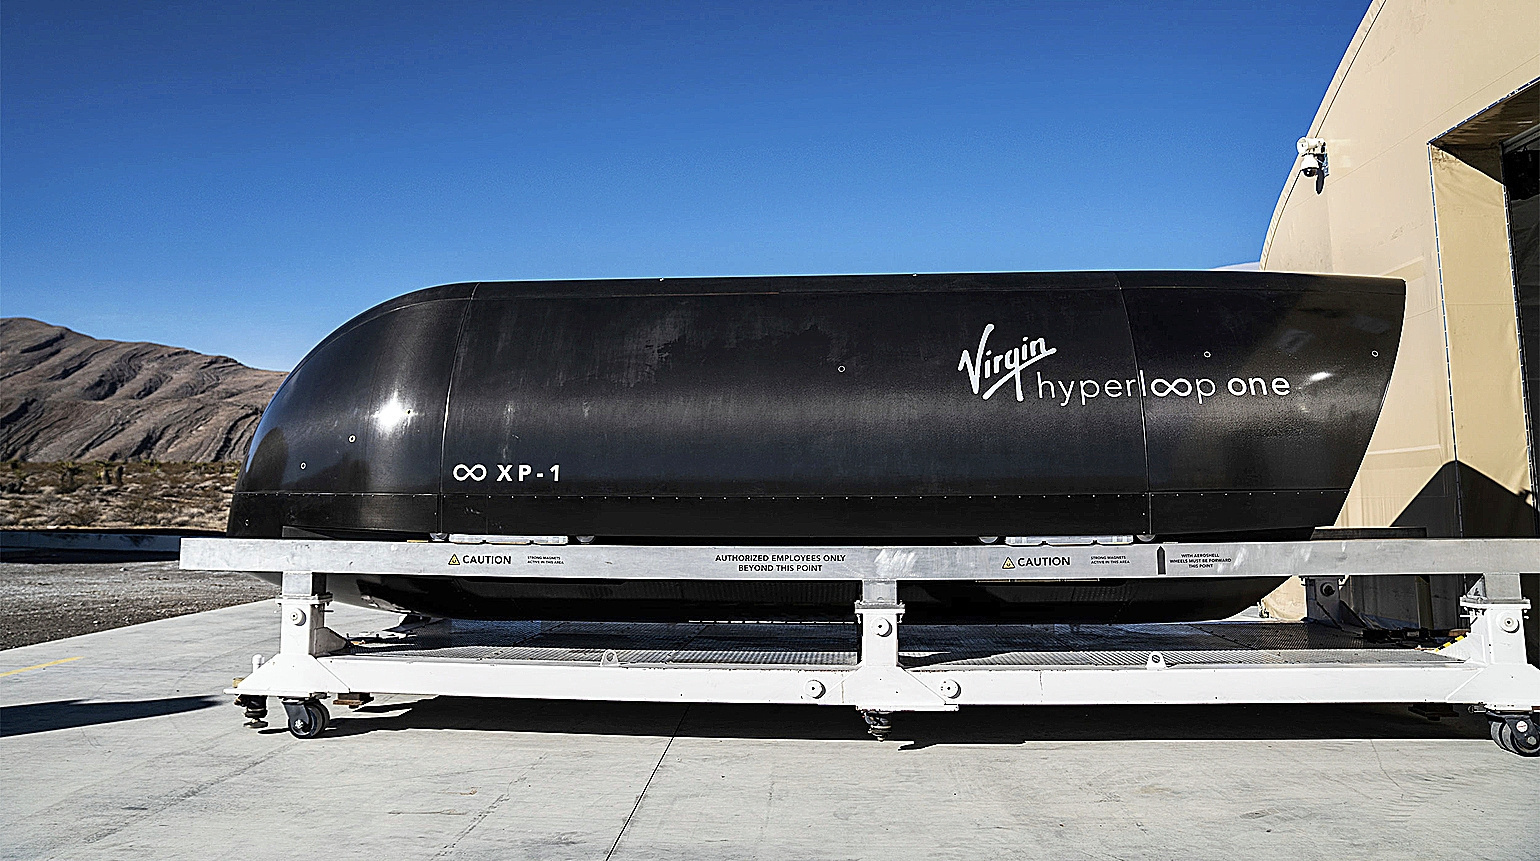 Cierra Hyperloop One, la alternativa al tren de alta velocidad ideada por Elon Musk